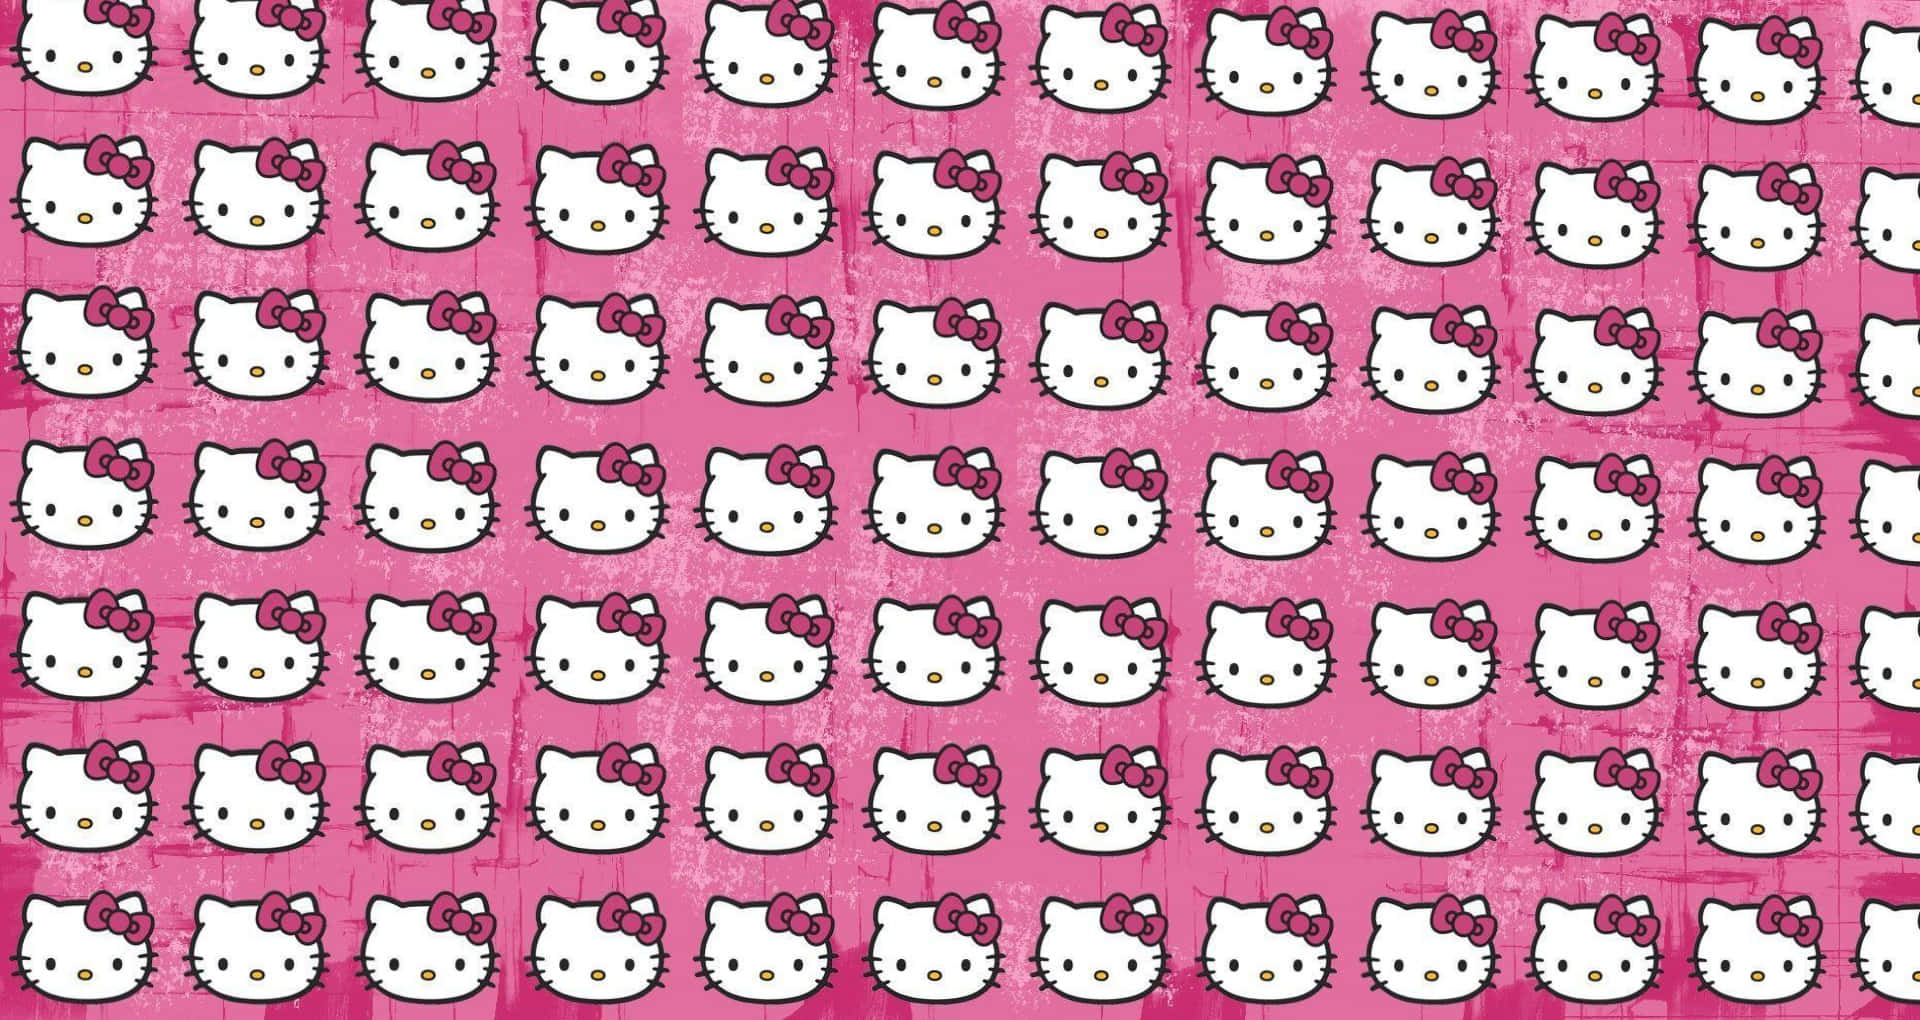 Để tạo ra một không gian làm việc mới nhẹ nhàng và đẹp mắt, bạn có thể thử sử dụng hình nền Hello Kitty trên máy tính xách tay của mình. Với những hình ảnh tuyệt đẹp, tươi sáng, bạn không chỉ có thể làm việc một cách năng suất mà còn có thể thư giãn với những bức hình đáng yêu nhất. 